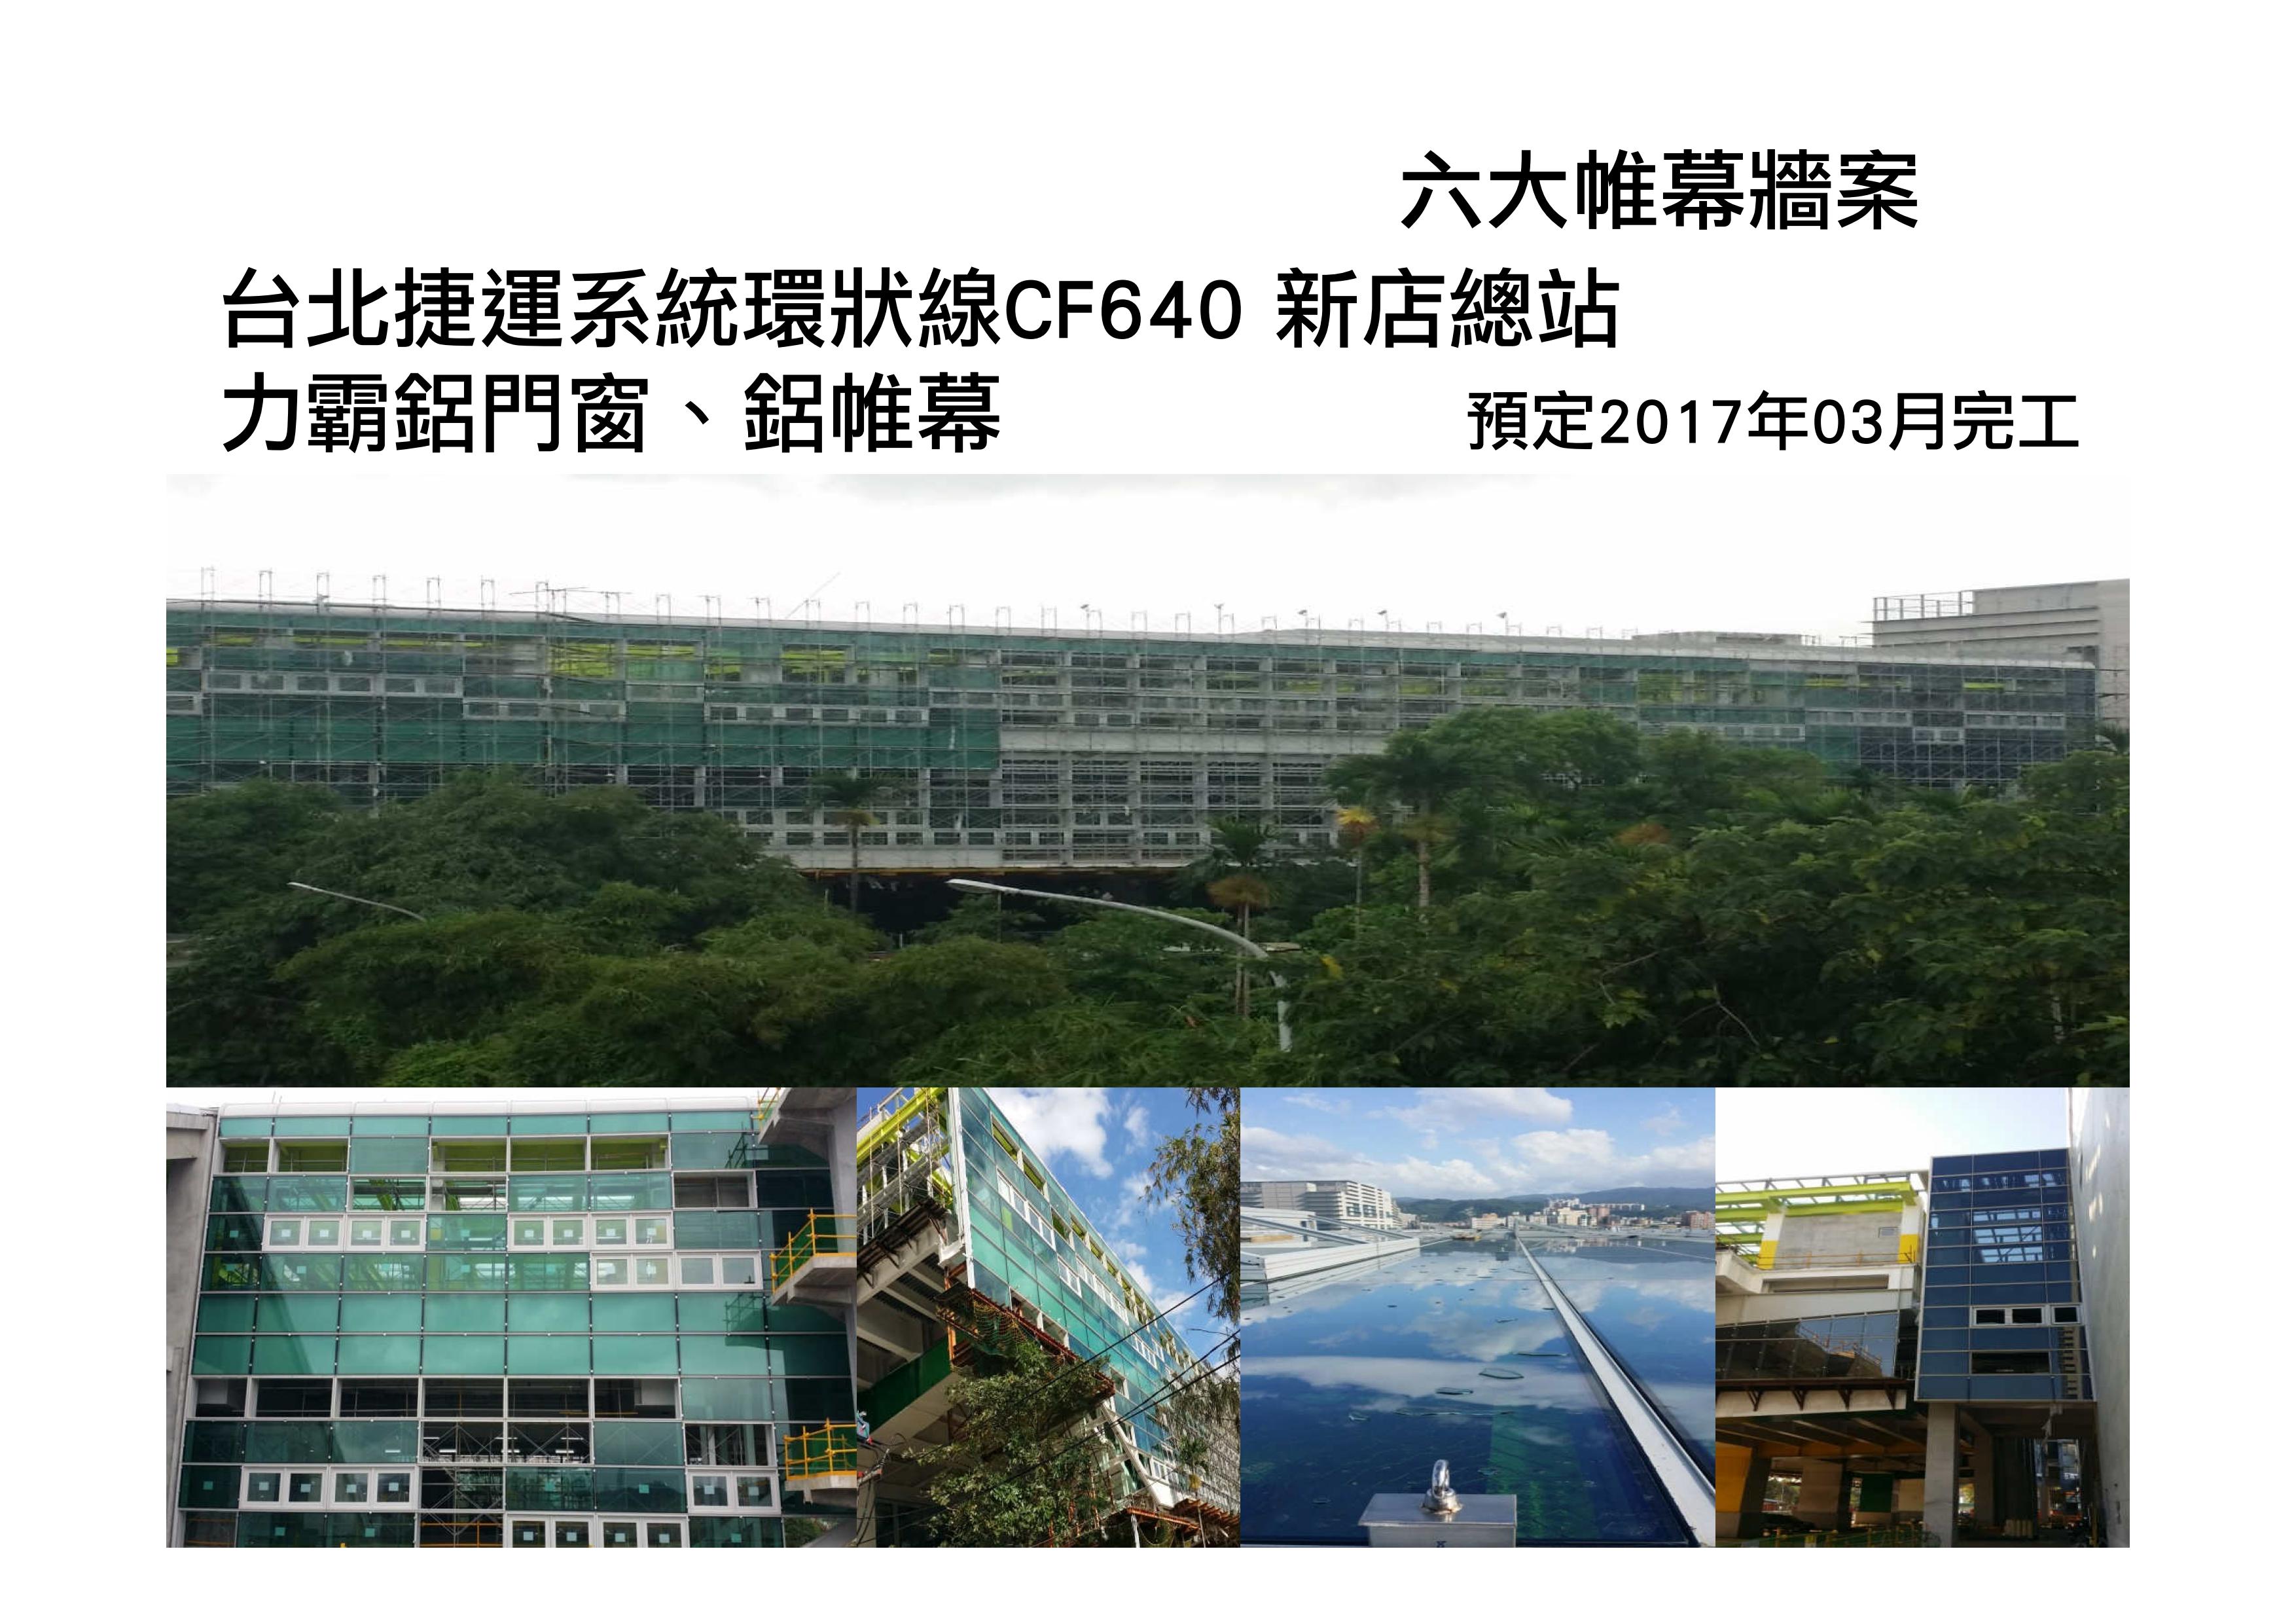 台北捷運系統環狀線CF640新店總站